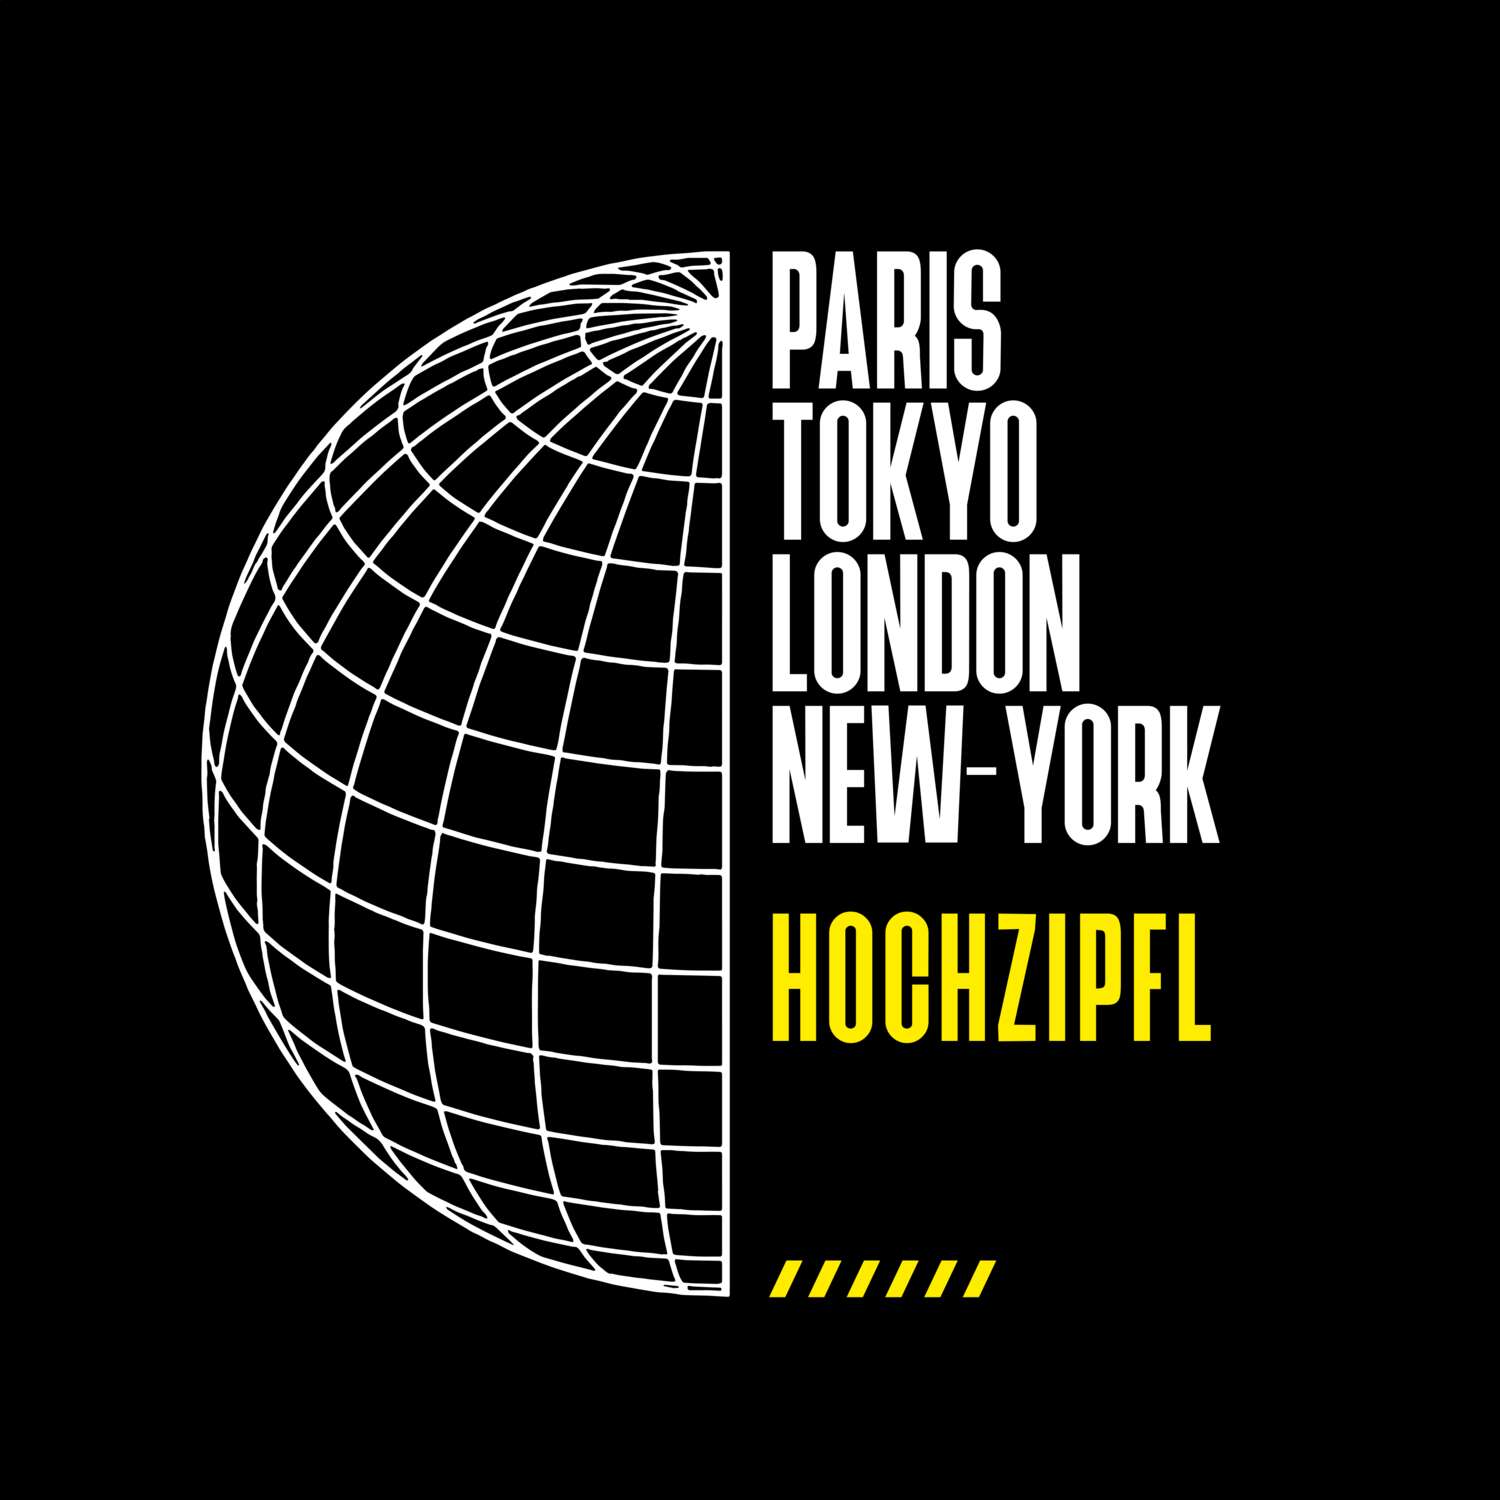 Hochzipfl T-Shirt »Paris Tokyo London«